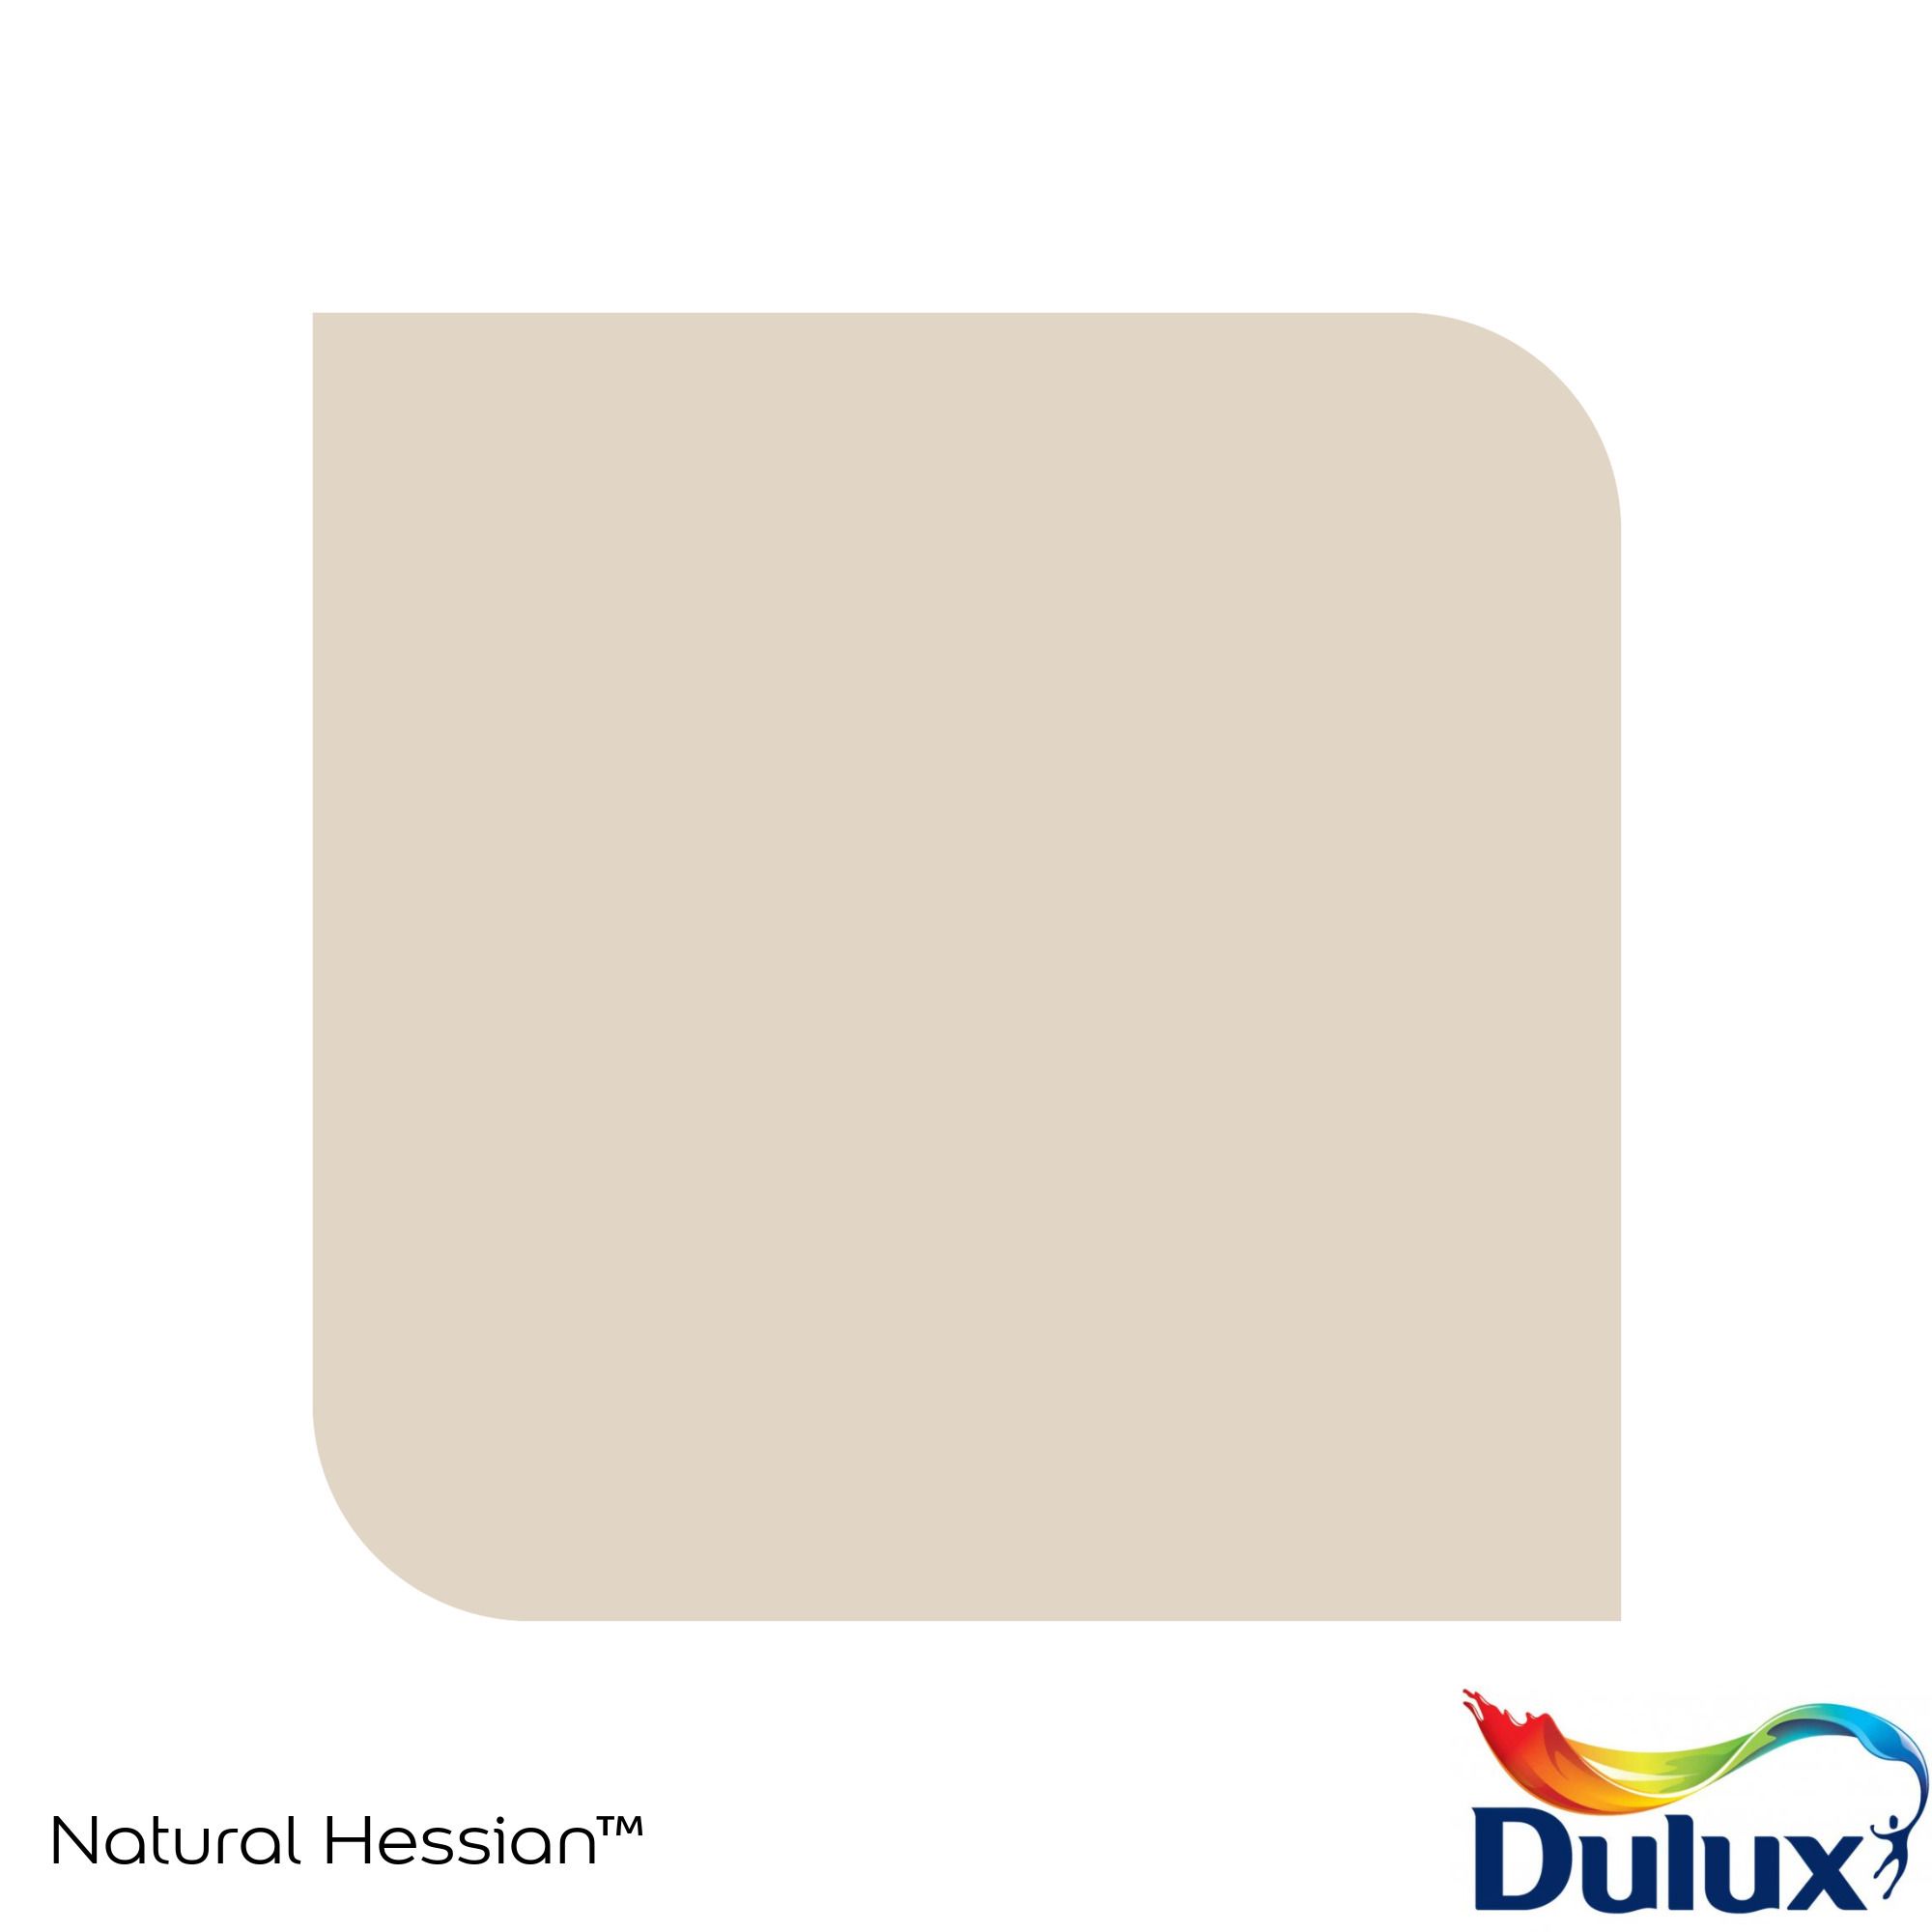 Dulux Standard Natural hessian Matt Emulsion paint, 30ml